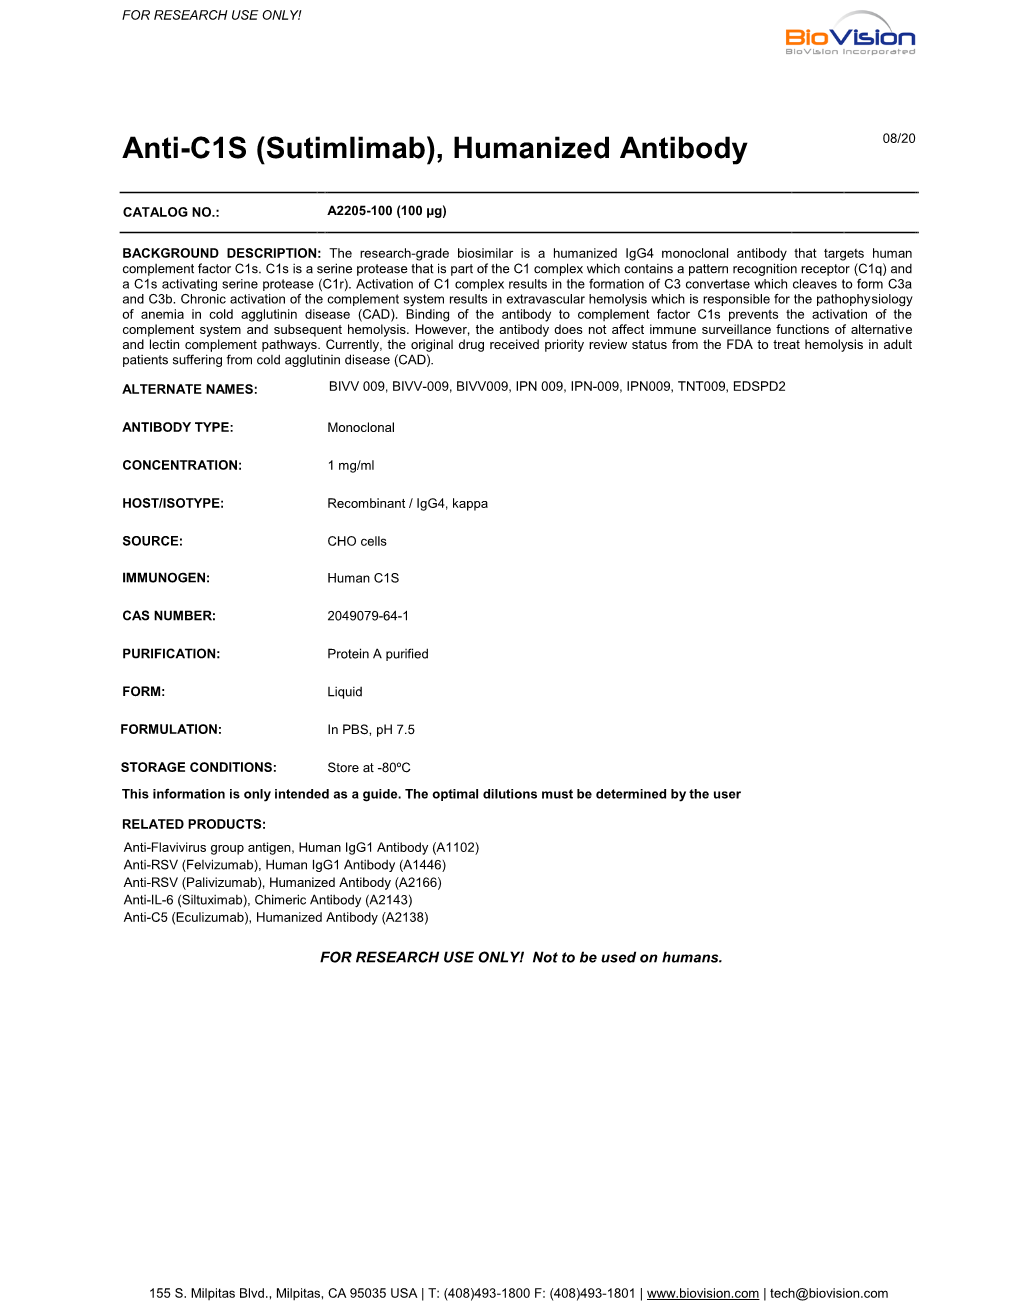 Anti-C1S (Sutimlimab), Humanized Antibody